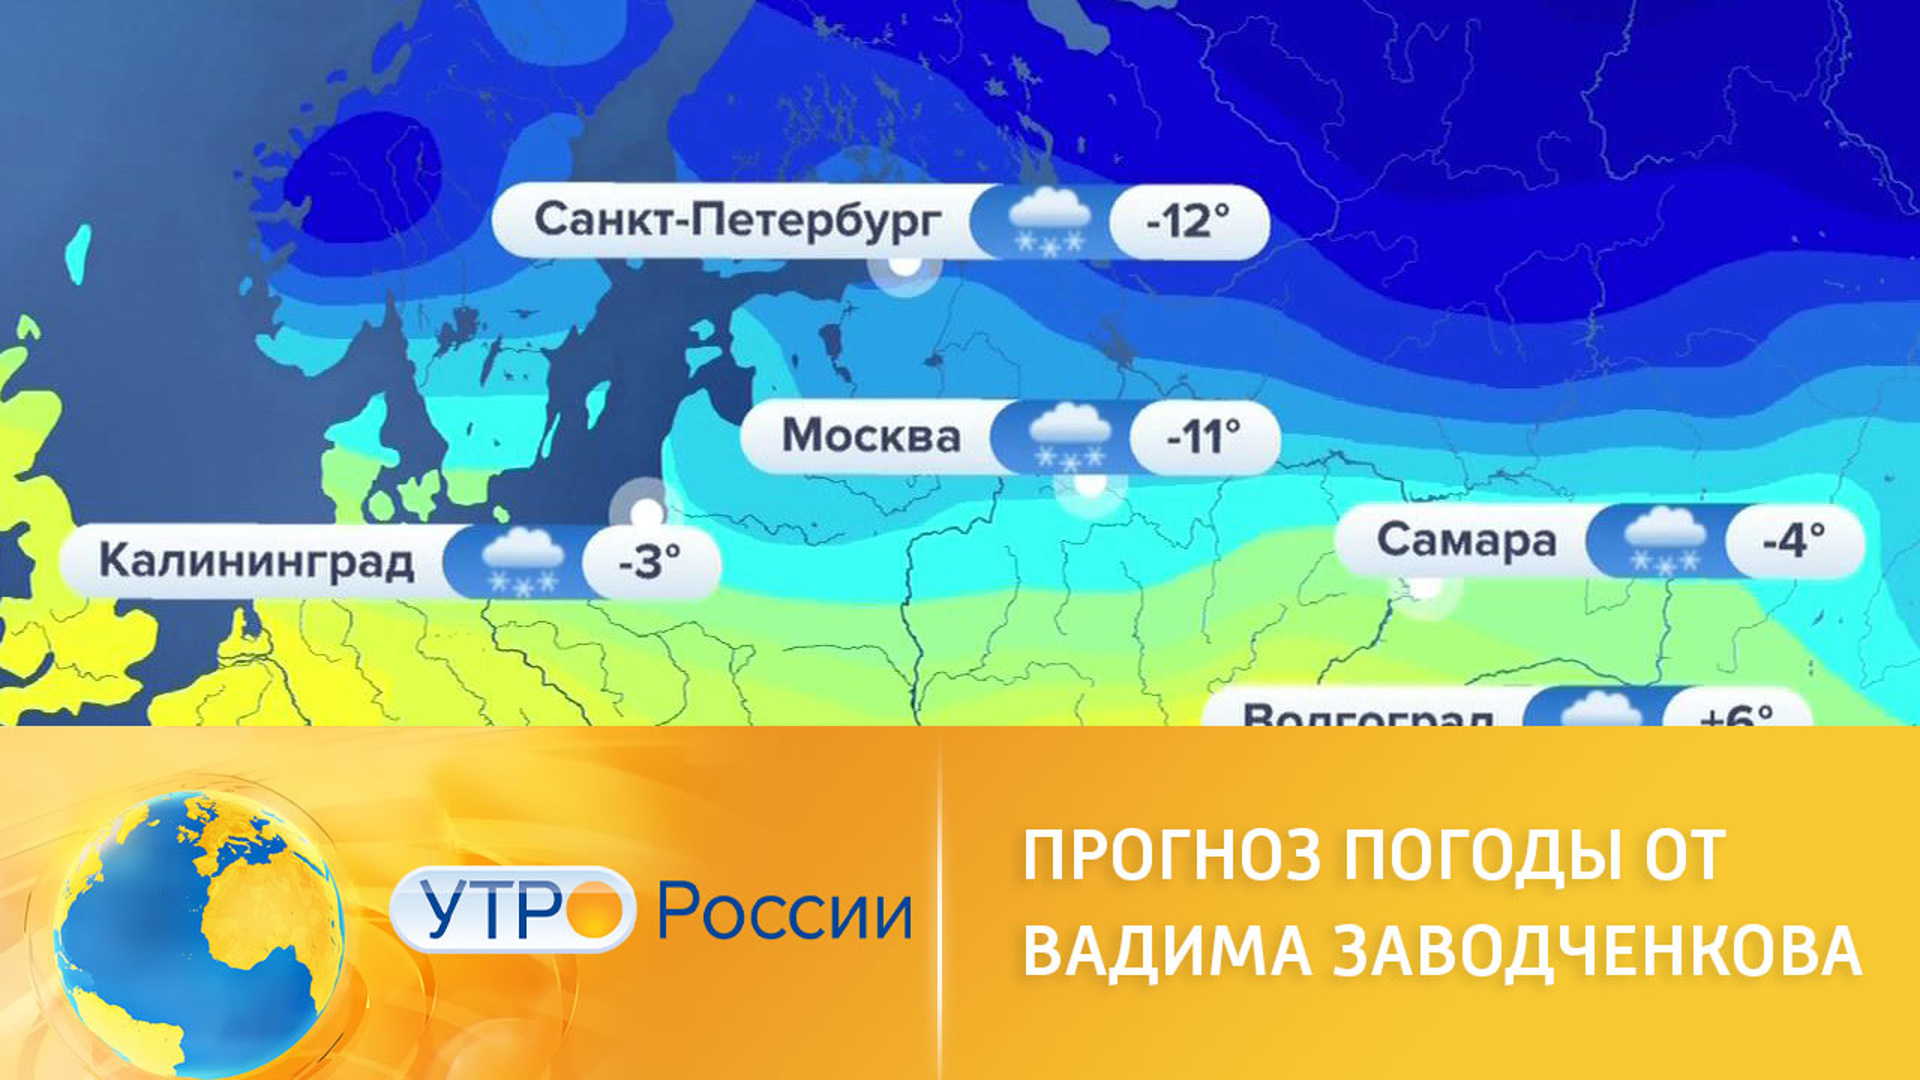 Найти погода в россии. Погода в России. Прогноз погоды Россия.